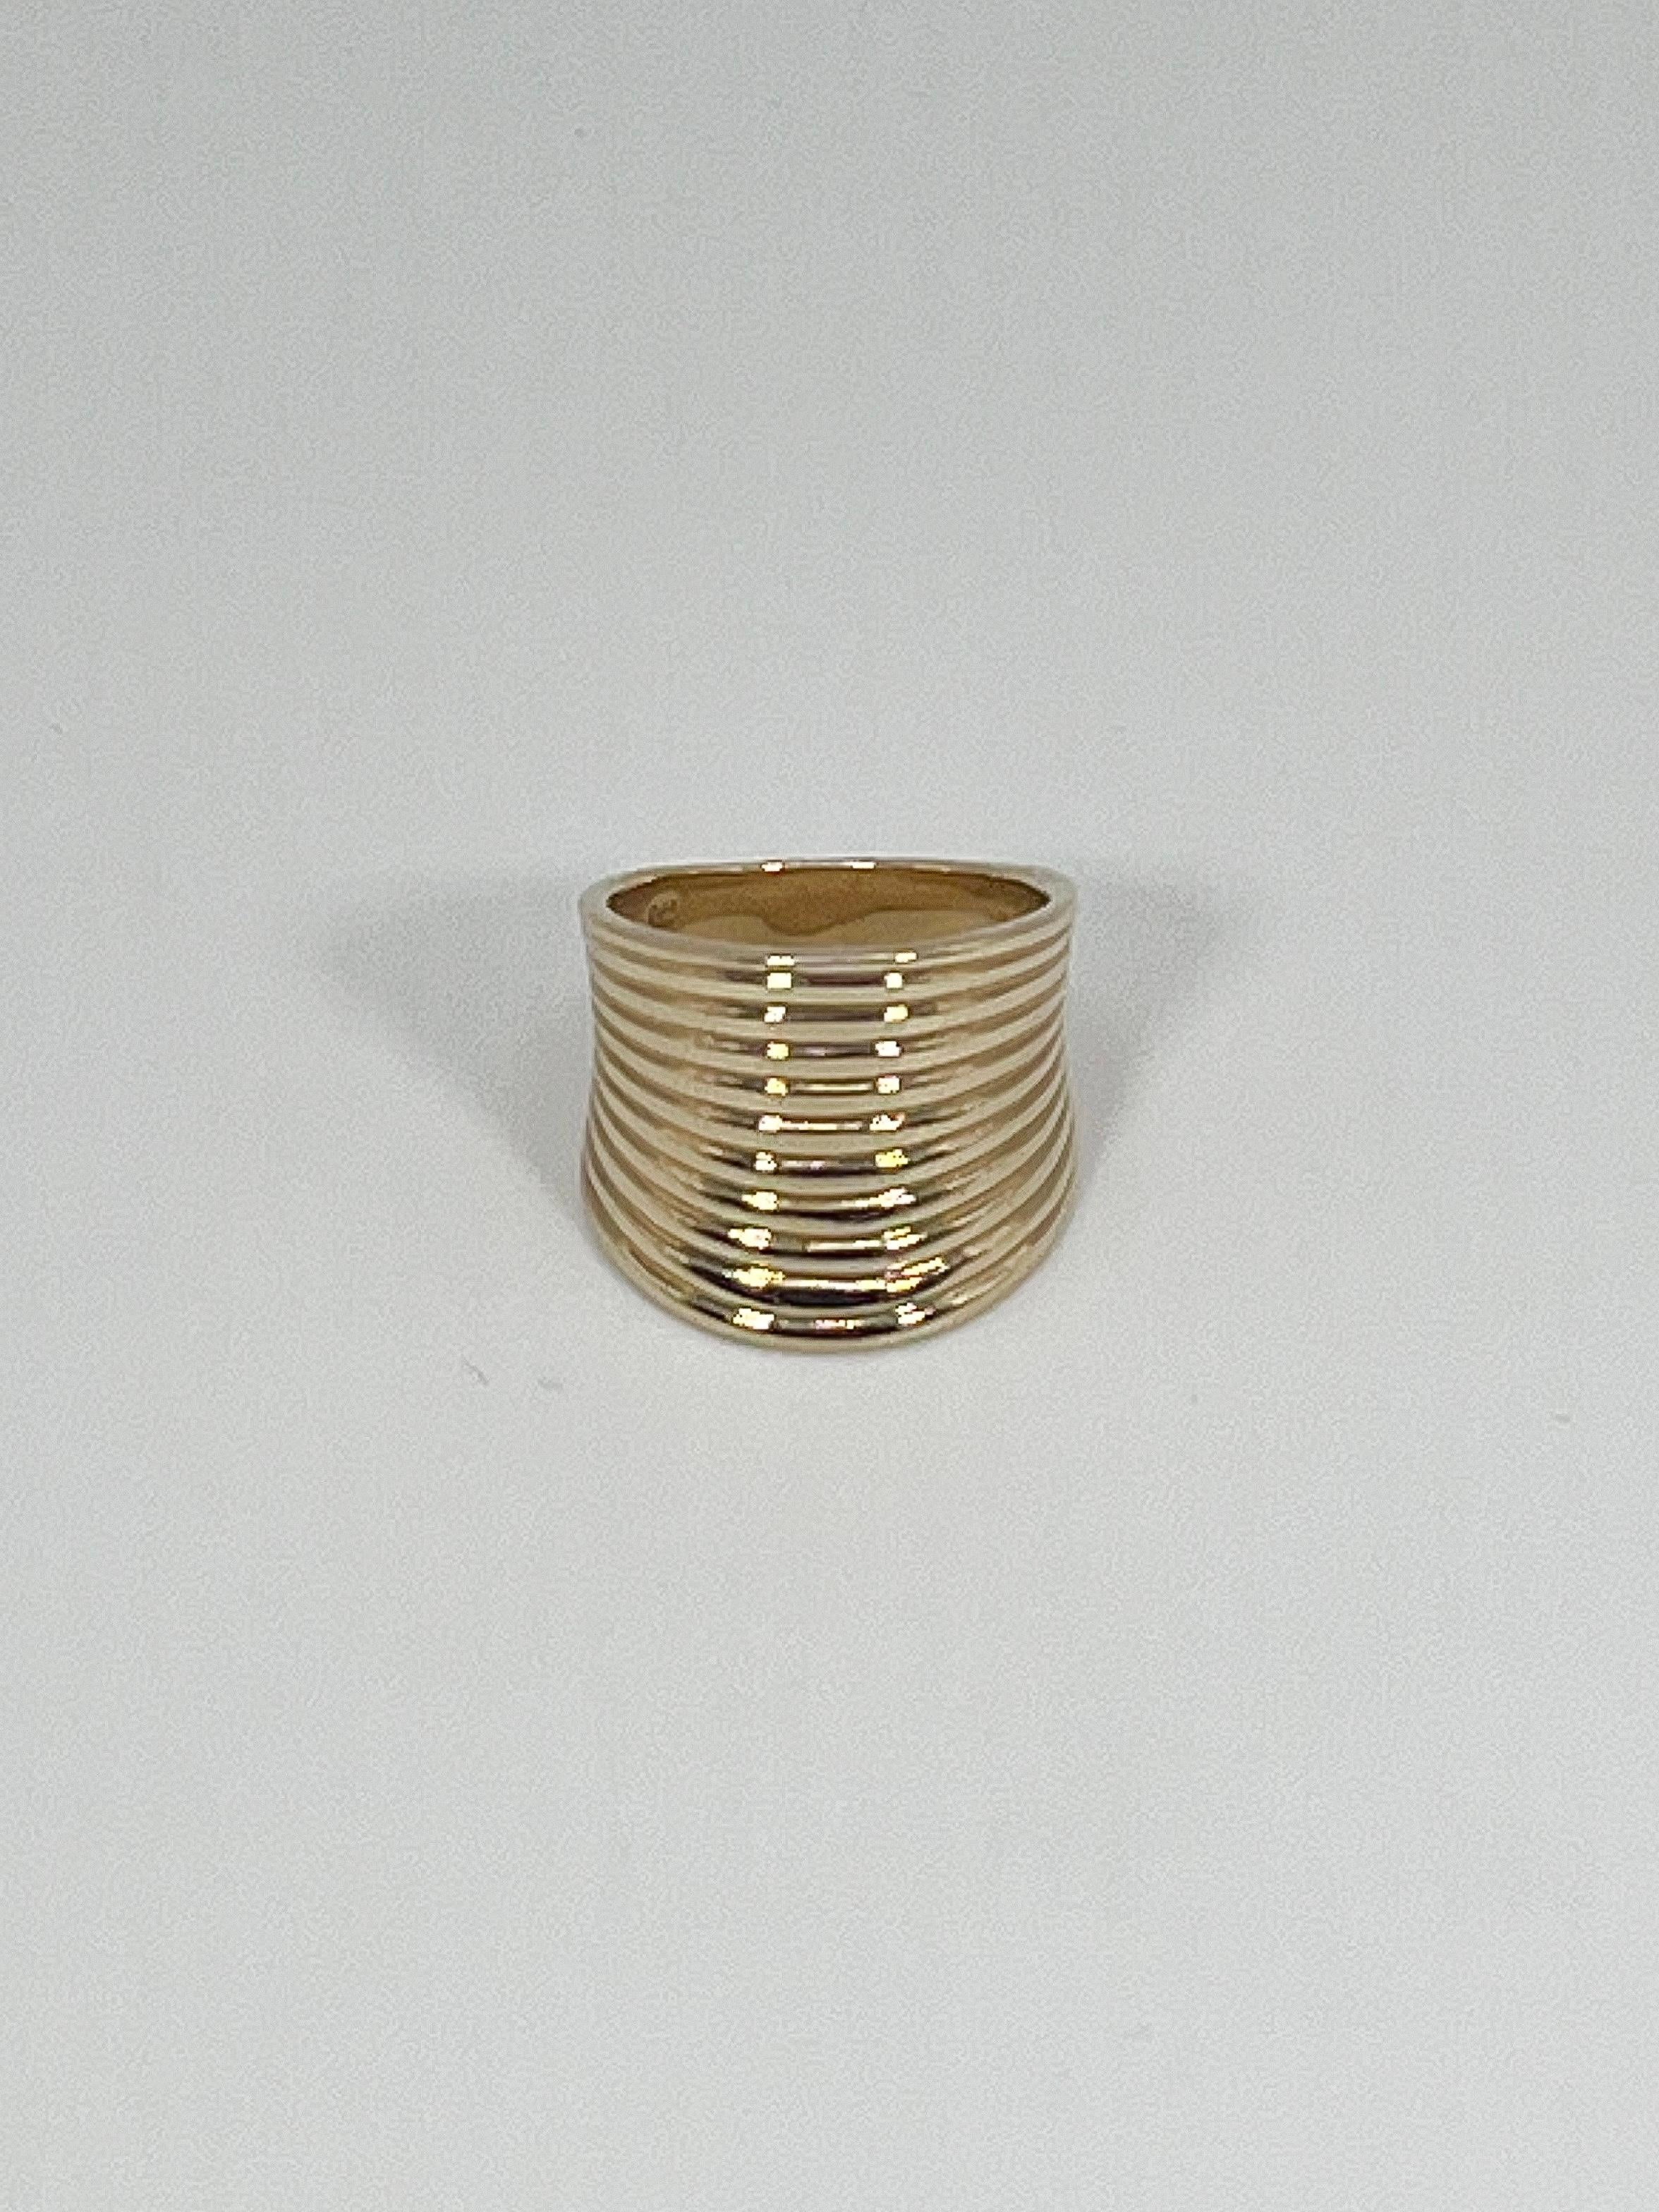 14K Gelbgold Sattel Ring, Größe 7, Länge der Spitze ist 18,2 MM und die Breite ist 20,3mm, Das Gewicht dieser Ring ist 10,5 Gramm.